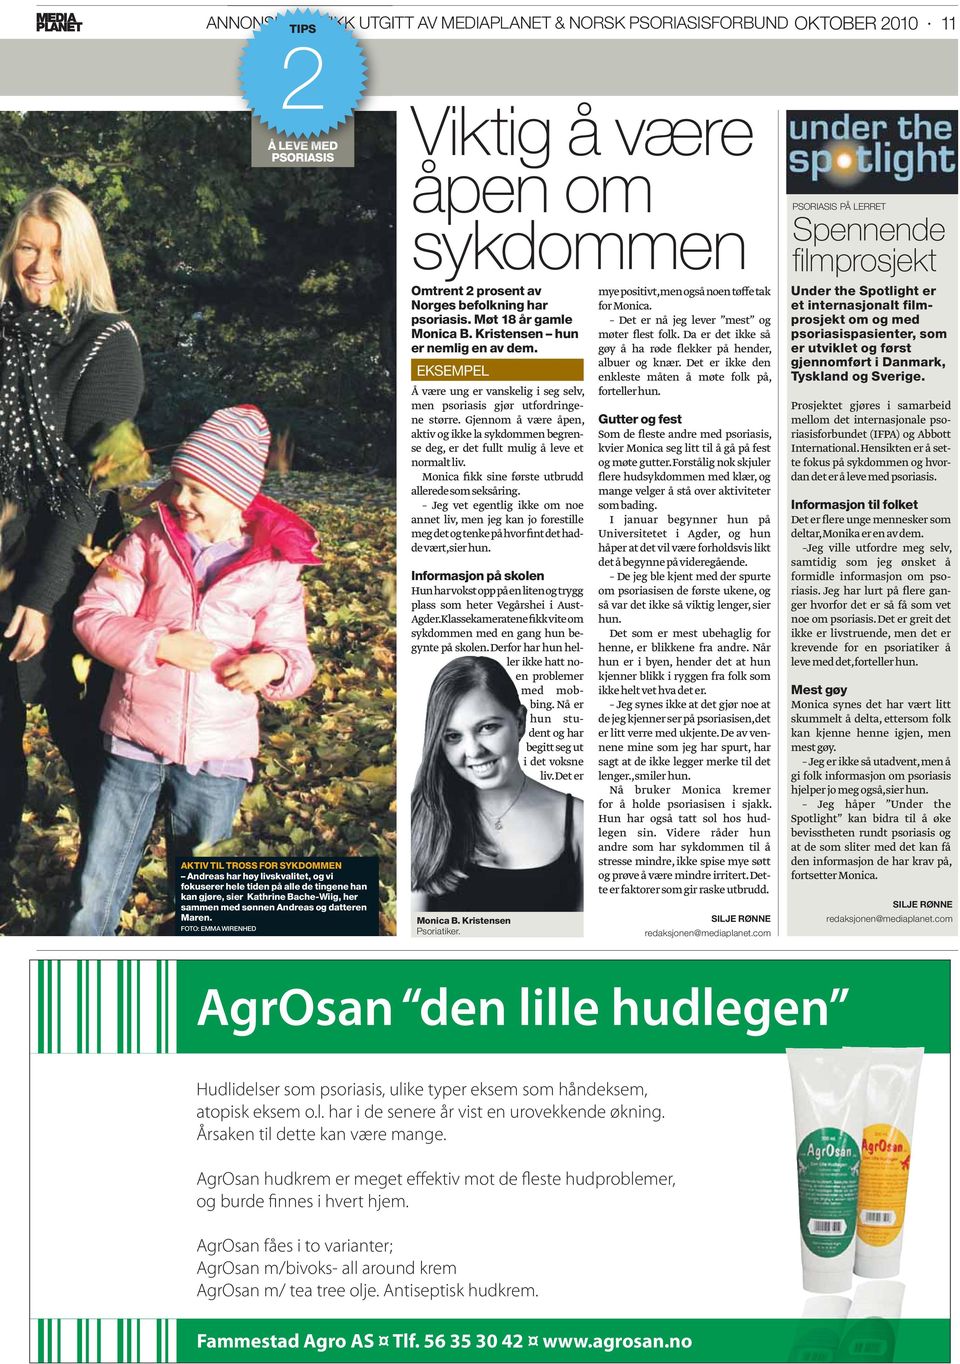 FOTO: EMMA WIRENHED Viktig å være åpen om sykdommen Omtrent 2 prosent av Norges befolkning har psoriasis. Møt 18 år gamle Monica B. Kristensen hun er nemlig en av dem.